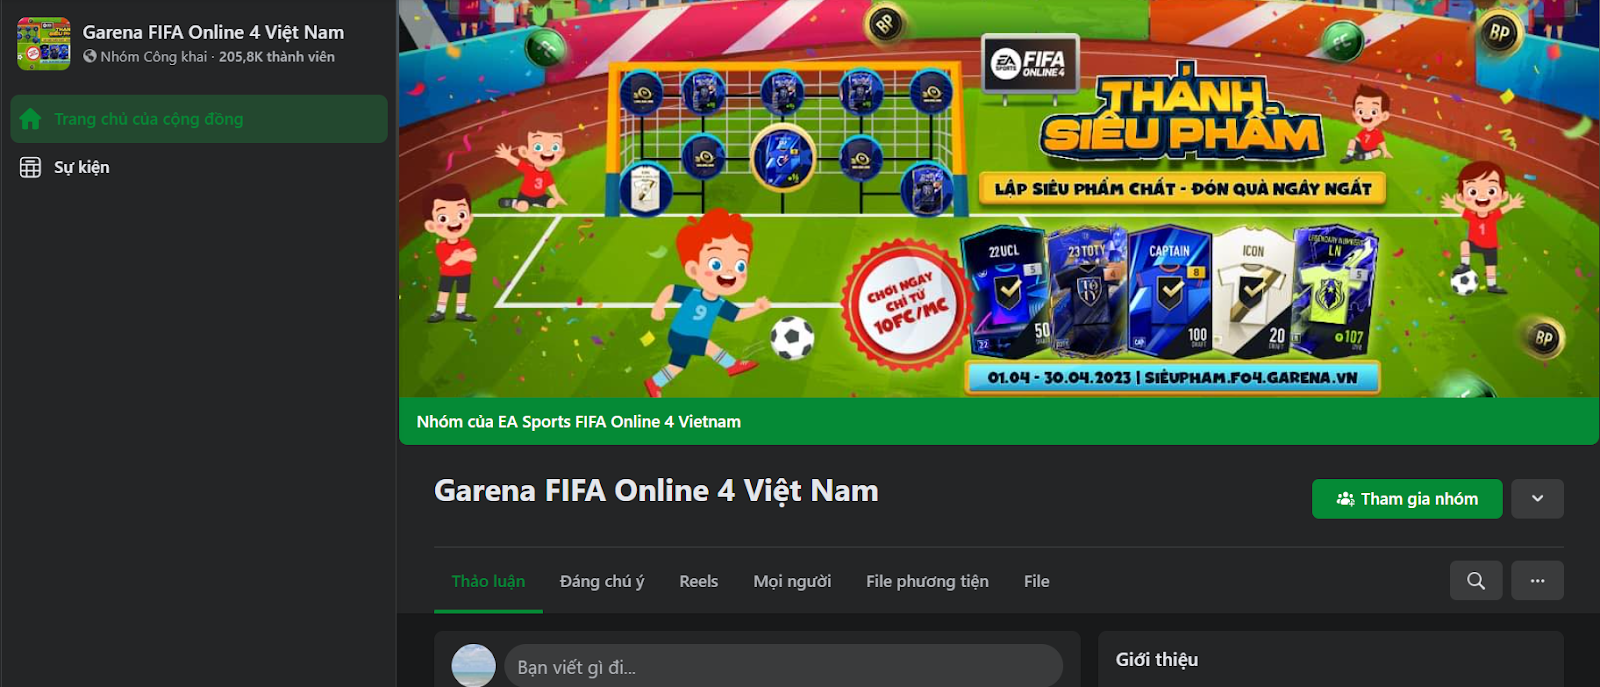 Nhóm Facebook FIFA ONLINE 4 Việt Nam 